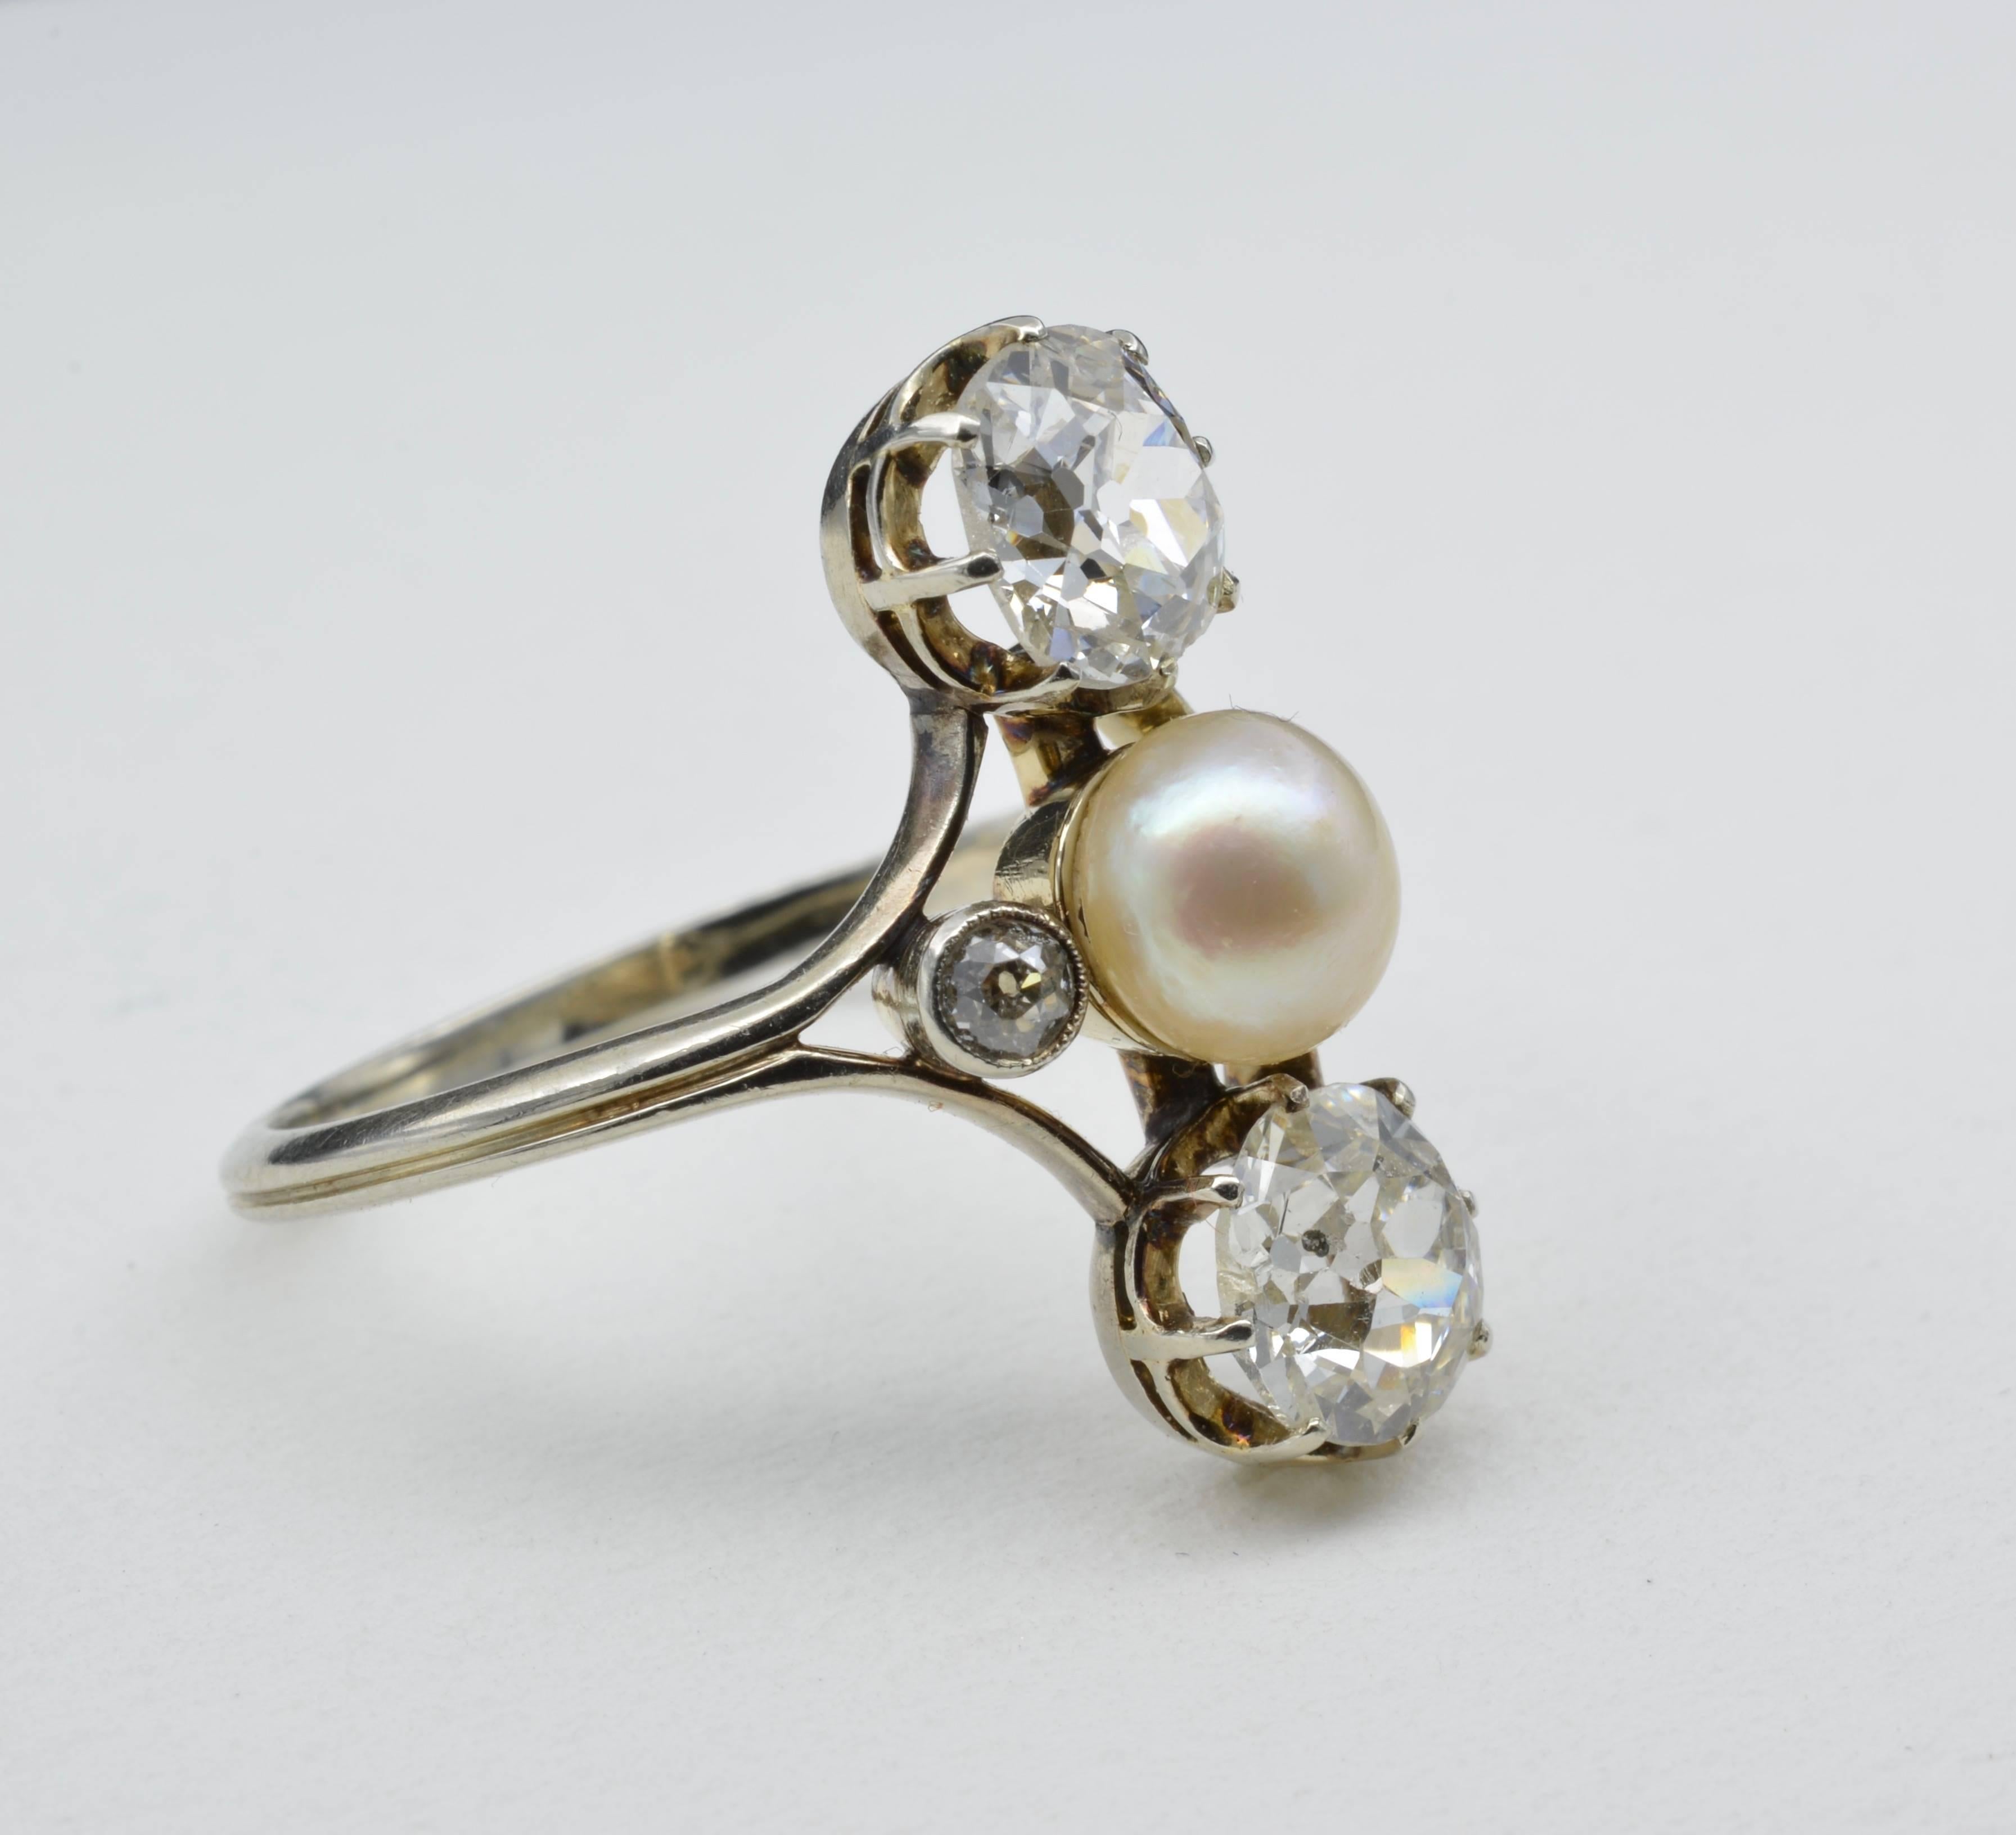 Dieser exquisite Ring stammt aus der Ära Napoleon III. von 1910 und ist im Josephinischen Stil gehalten. Zwei prächtige Diamanten im Altminenschliff haben ein Gesamtgewicht von 2,4 Karat und eine zentrale 6,4 mm große Perle. Zwei Diamanten setzen